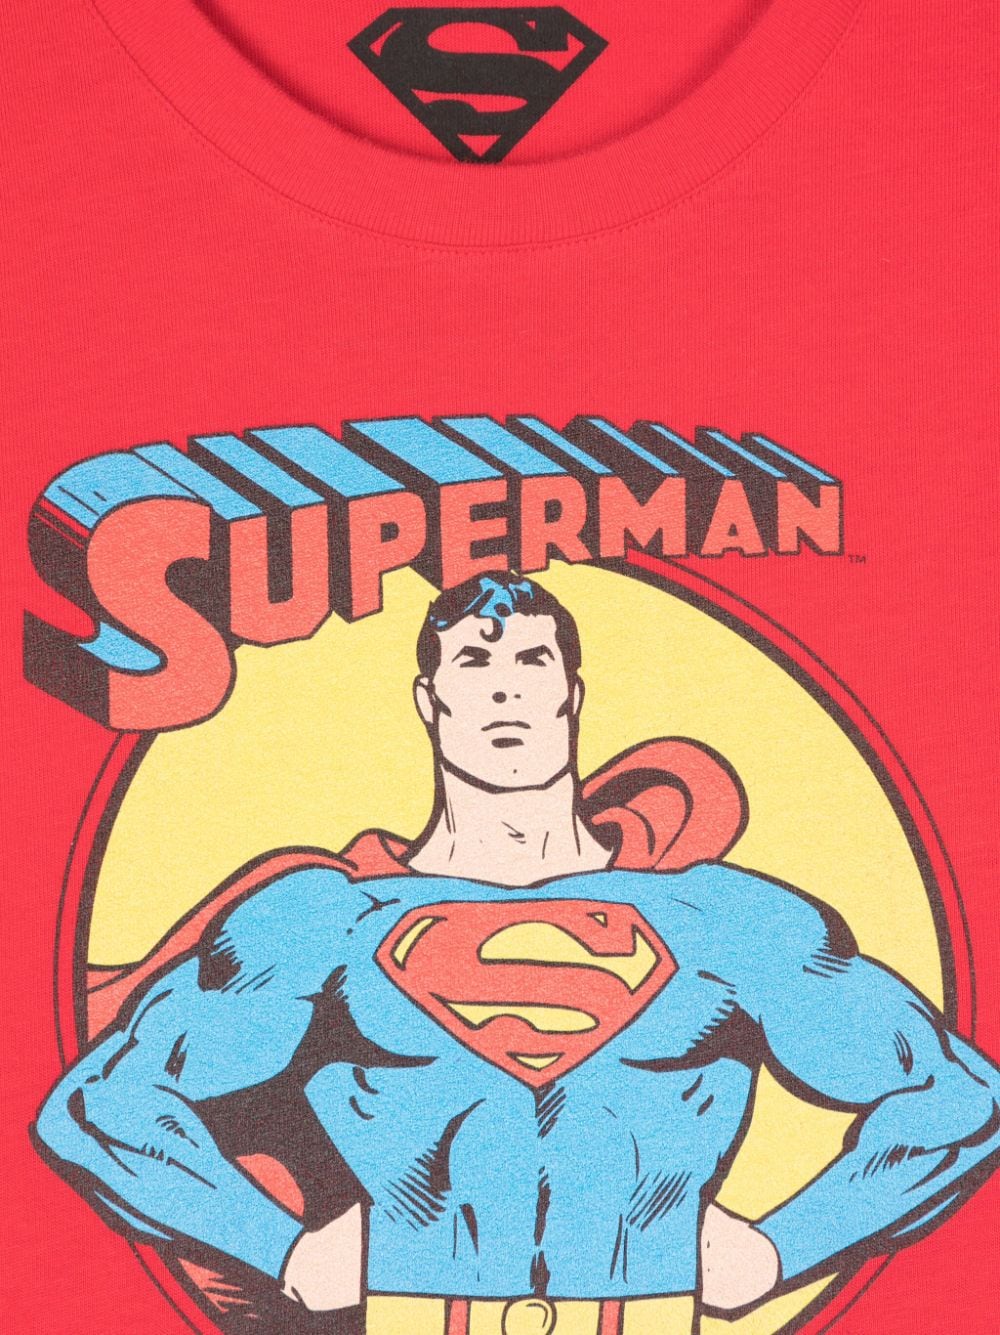 T-shirt con stampa Superman - Rubino Kids